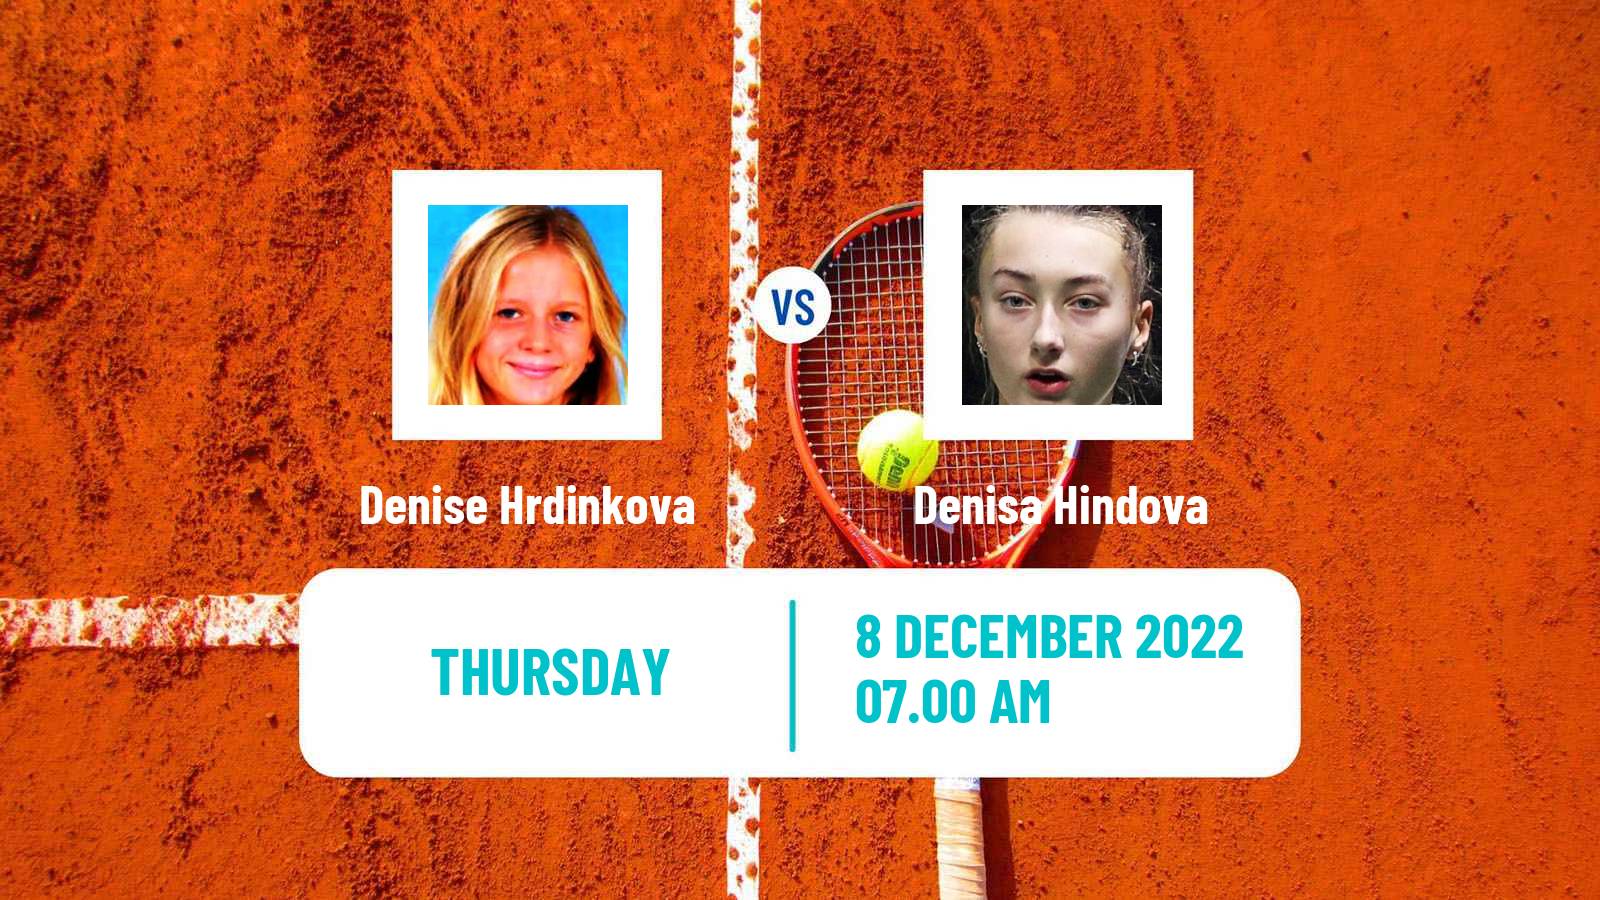 Tennis ITF Tournaments Denise Hrdinkova - Denisa Hindova